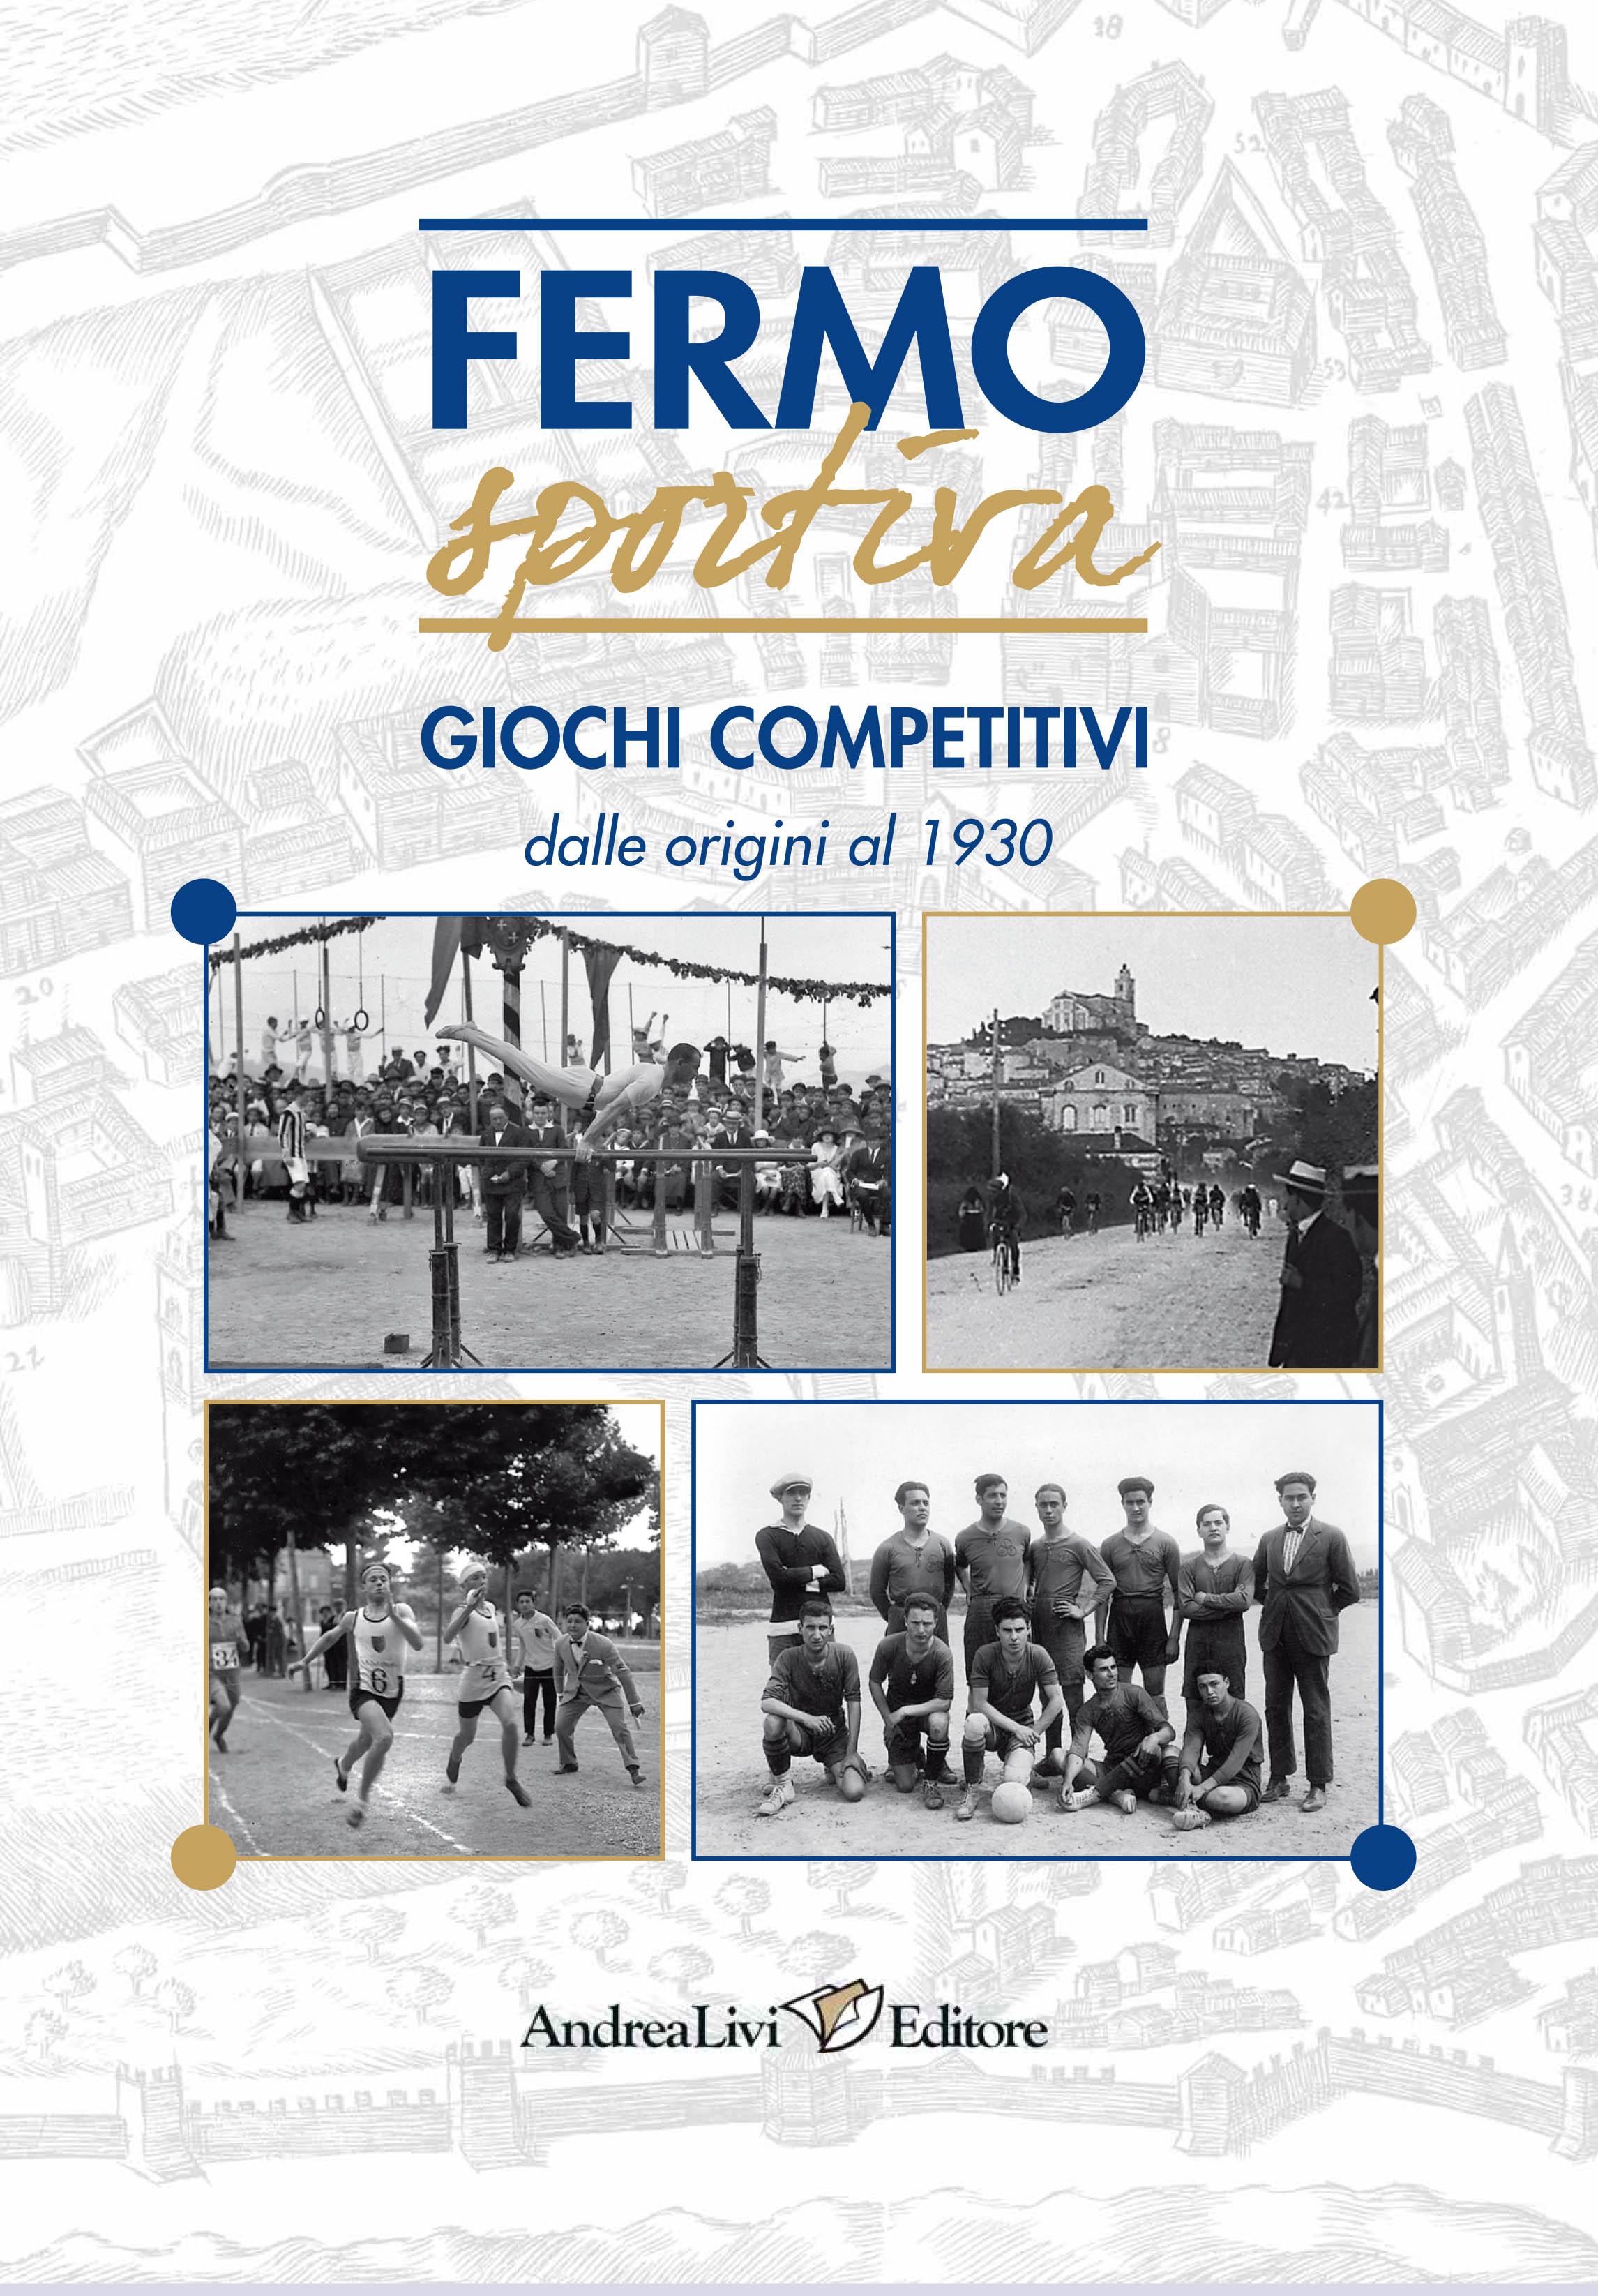 Fermo sportiva. Giochi competitivi dalle origini al 1930, a cura di Andrea Livi e Sabrina Sollini